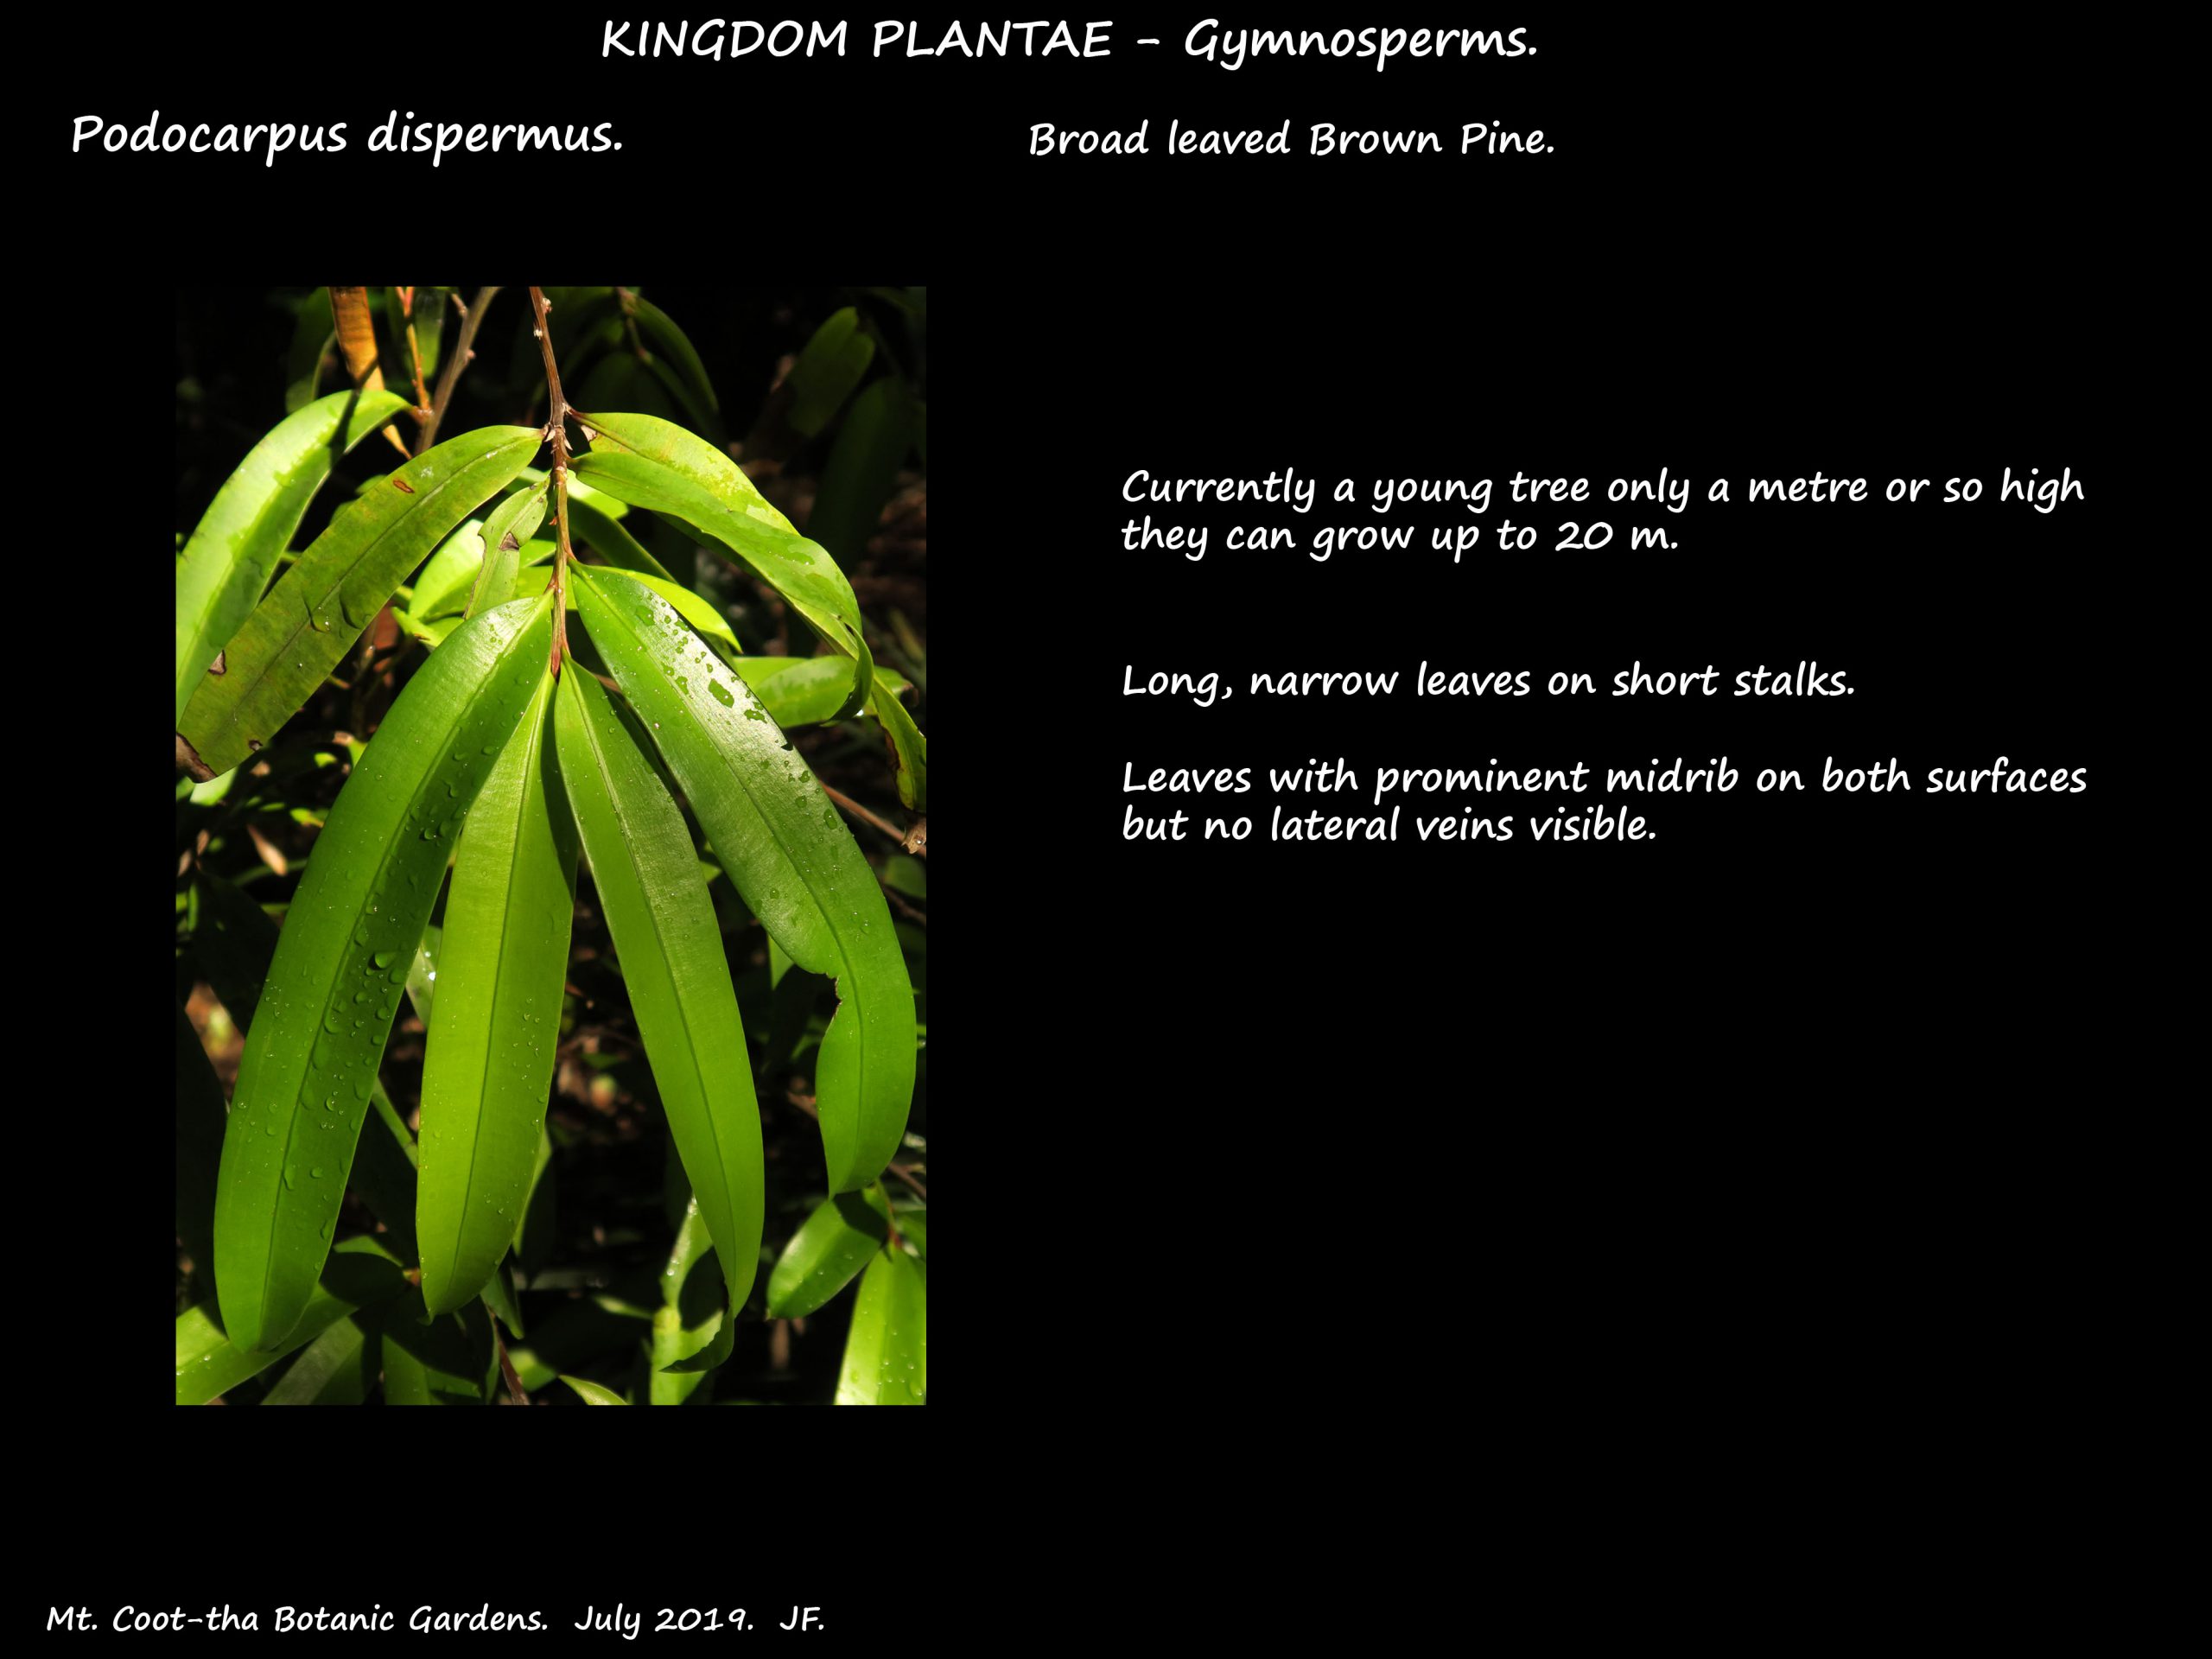 1 Podocarpus dispermus leaves